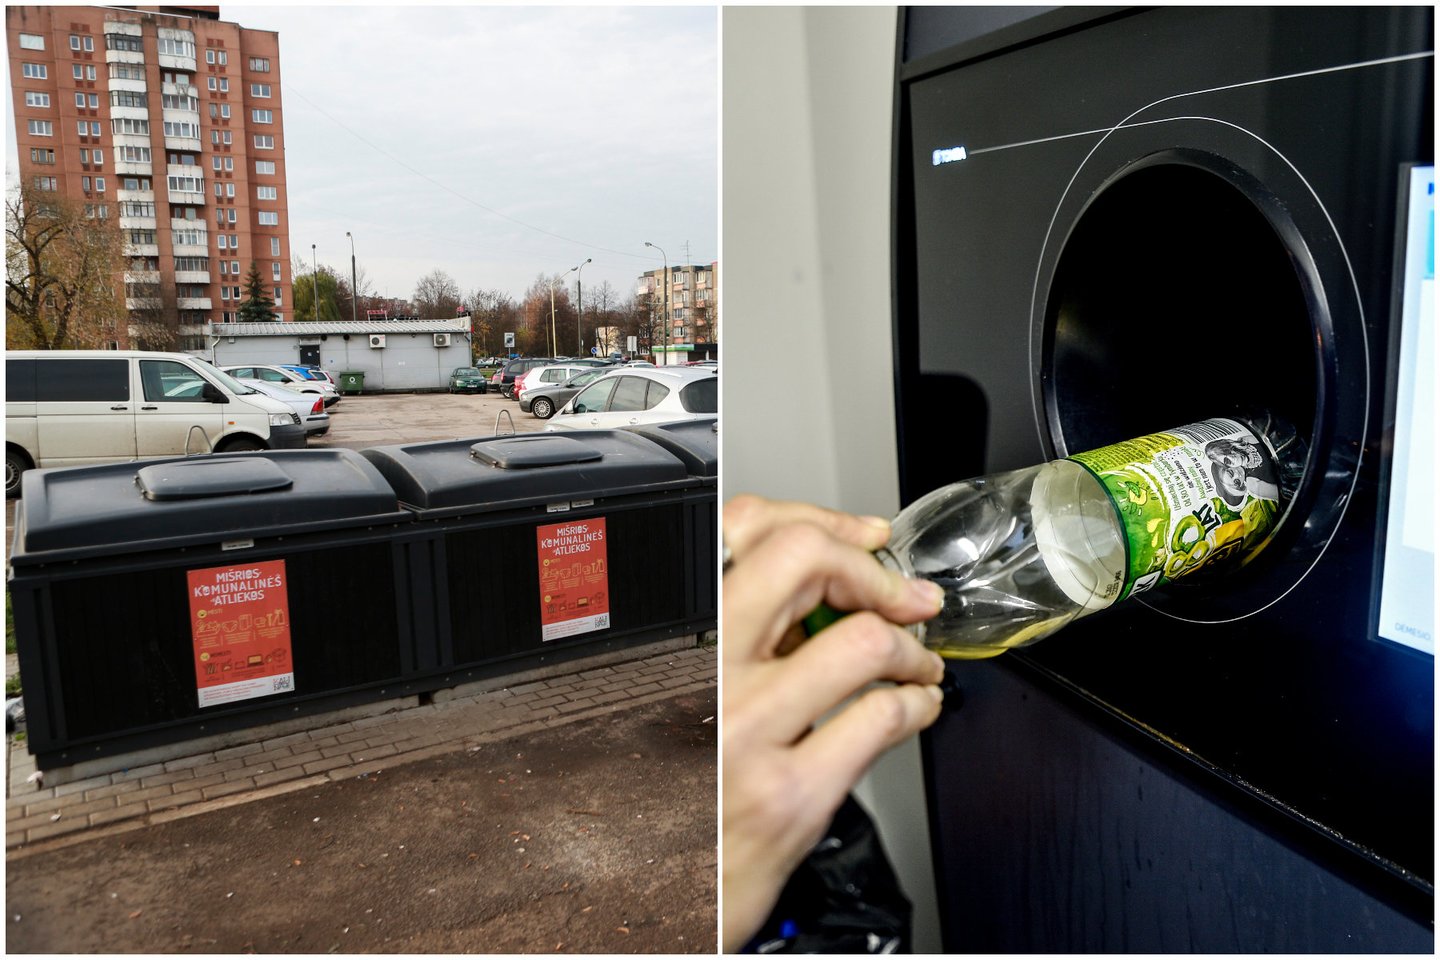 Patirtis rodo, kad taromatai ir konteinerinė atliekų tvarkymo sistema Lietuvoje jau puikiai veikia ir dera tarpusavyje.